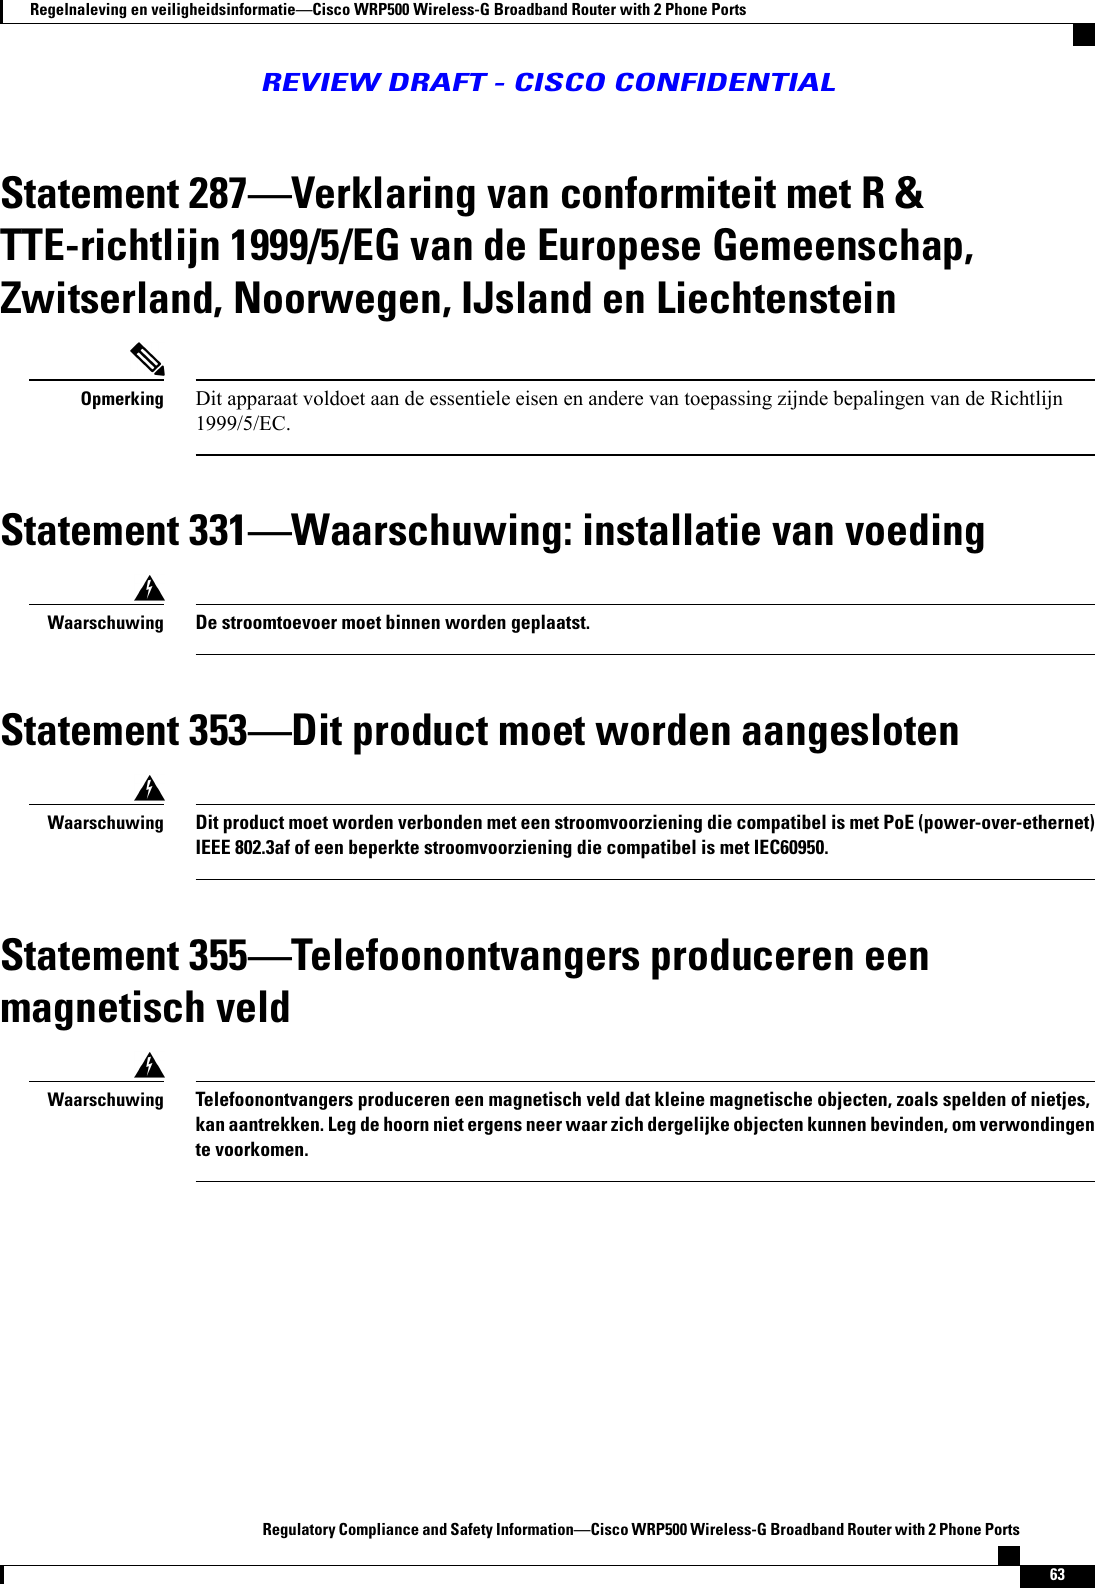 Statement 287Verklaring van conformiteit met R &amp;TTE-richtlijn 1999/5/EG van de Europese Gemeenschap,Zwitserland, Noorwegen, IJsland en LiechtensteinDit apparaat voldoet aan de essentiele eisen en andere van toepassing zijnde bepalingen van de Richtlijn1999/5/EC.OpmerkingStatement 331Waarschuwing: installatie van voedingDe stroomtoevoer moet binnen worden geplaatst.WaarschuwingStatement 353Dit product moet worden aangeslotenDit product moet worden verbonden met een stroomvoorziening die compatibel is met PoE (power-over-ethernet)IEEE 802.3af of een beperkte stroomvoorziening die compatibel is met IEC60950.WaarschuwingStatement 355Telefoonontvangers produceren eenmagnetisch veldTelefoonontvangers produceren een magnetisch veld dat kleine magnetische objecten, zoals spelden of nietjes,kan aantrekken. Leg de hoorn niet ergens neer waar zich dergelijke objecten kunnen bevinden, om verwondingente voorkomen.WaarschuwingRegulatory Compliance and Safety InformationCisco WRP500 Wireless-G Broadband Router with 2 Phone Ports63Regelnaleving en veiligheidsinformatieCisco WRP500 Wireless-G Broadband Router with 2 Phone PortsREVIEW DRAFT - CISCO CONFIDENTIAL